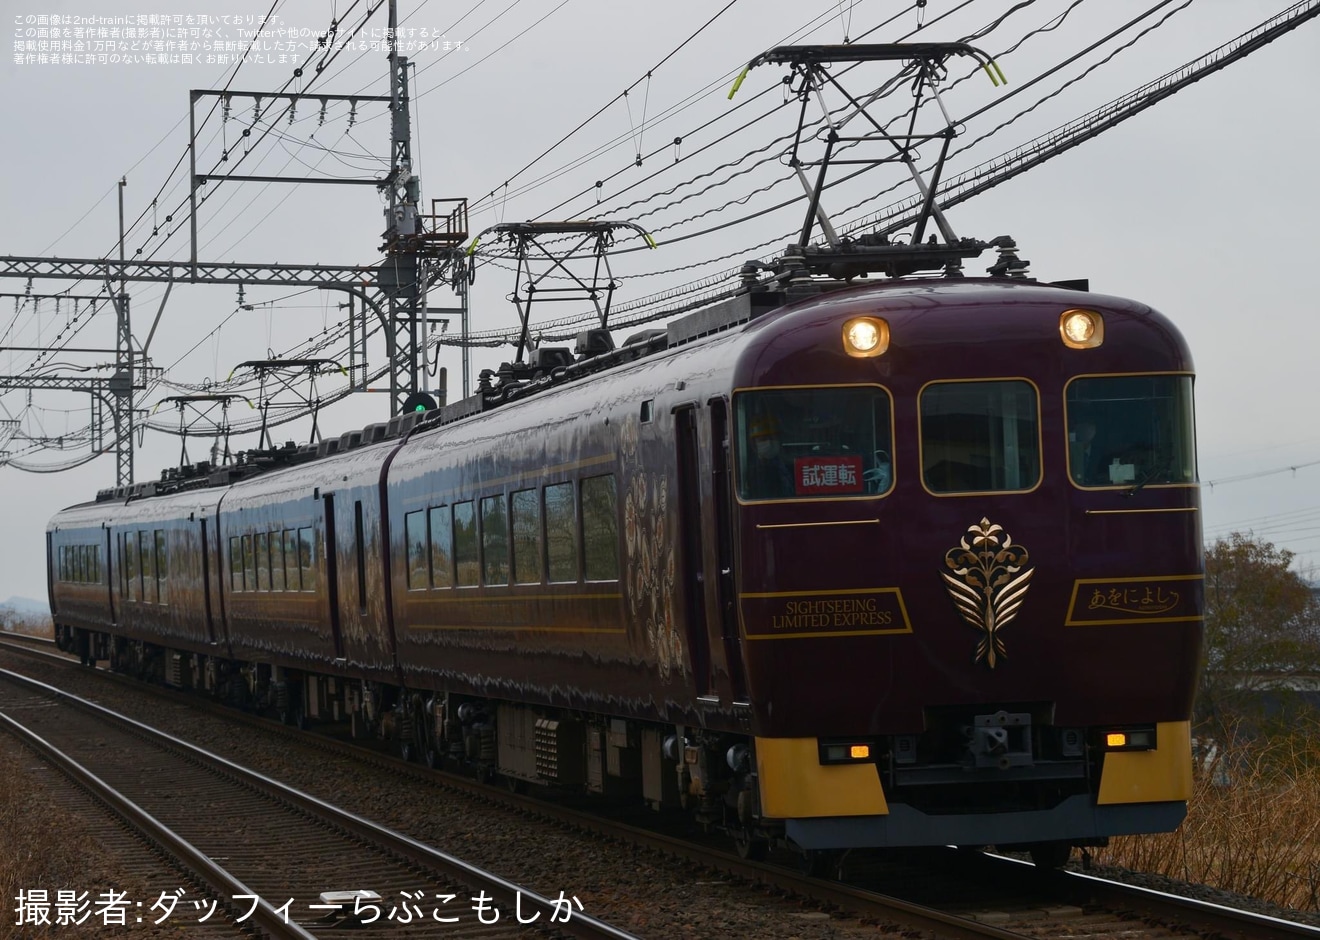 【近鉄】19200系あをによし(SA01)が近鉄大阪線で試運転の拡大写真